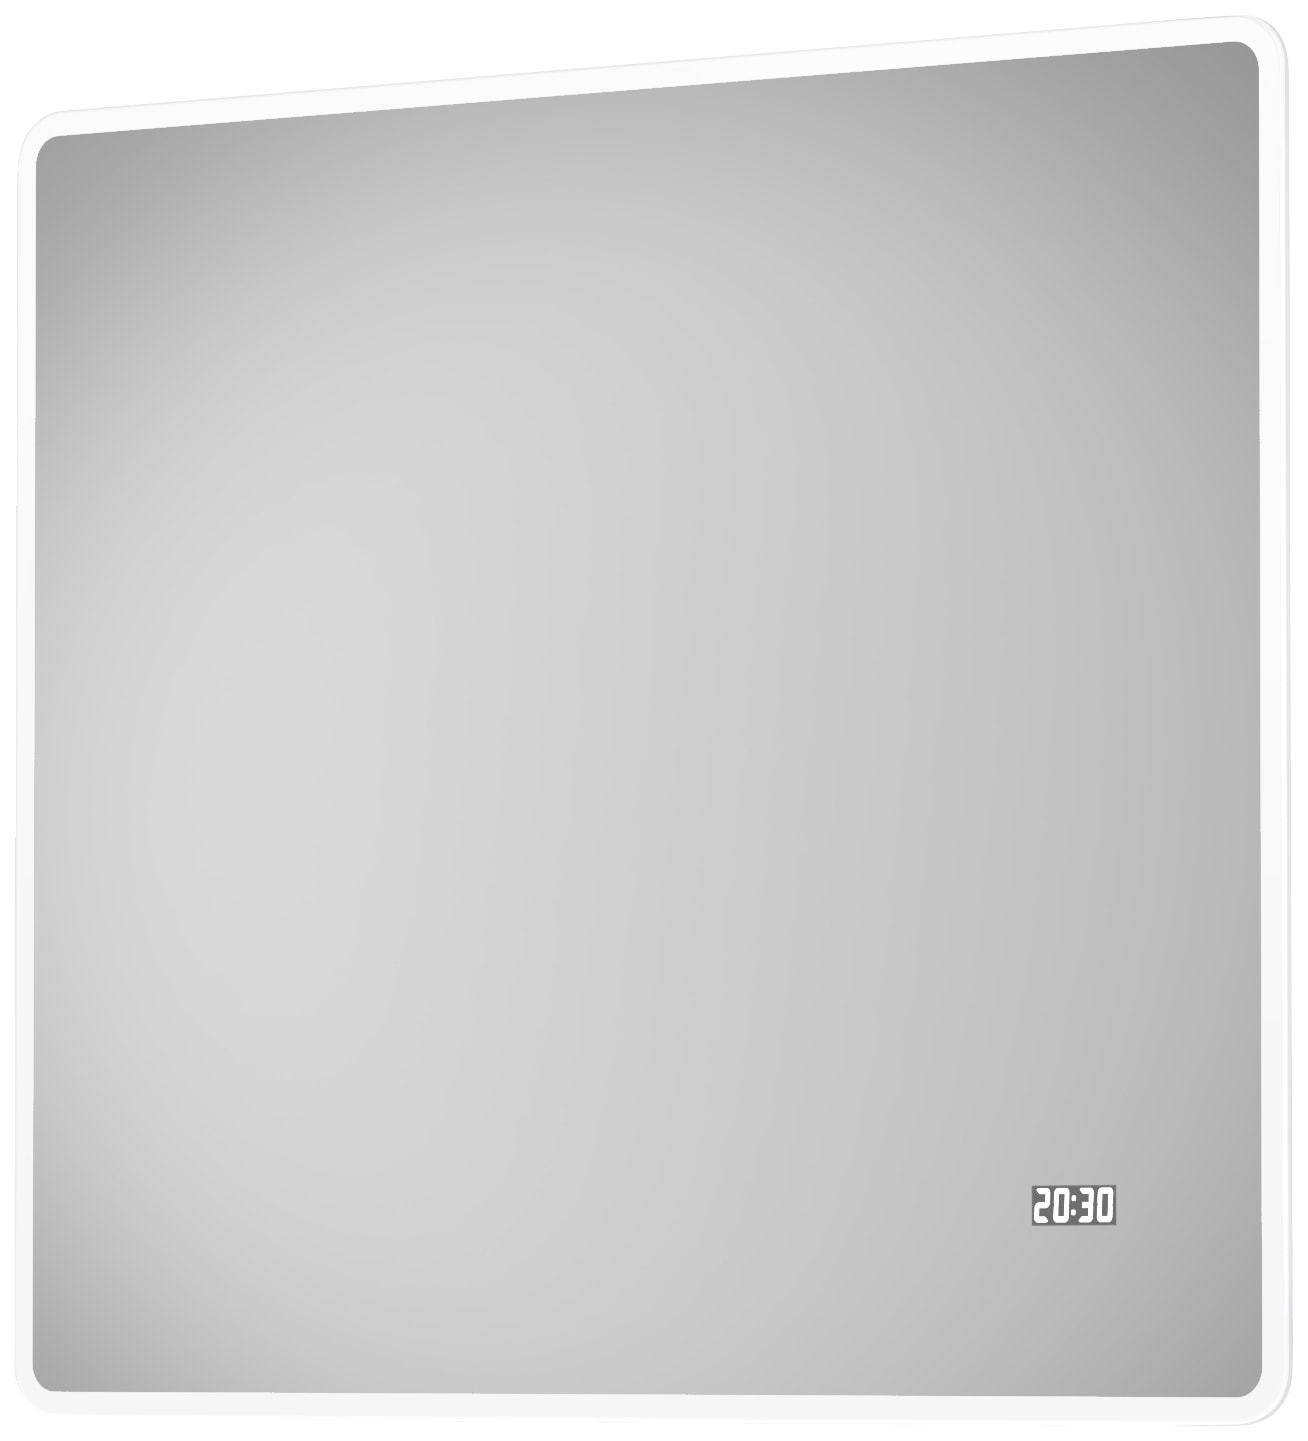 Talos Badspiegel »Sun«, BxH: 80x70 cm, energiesparend, mit Digitaluhr